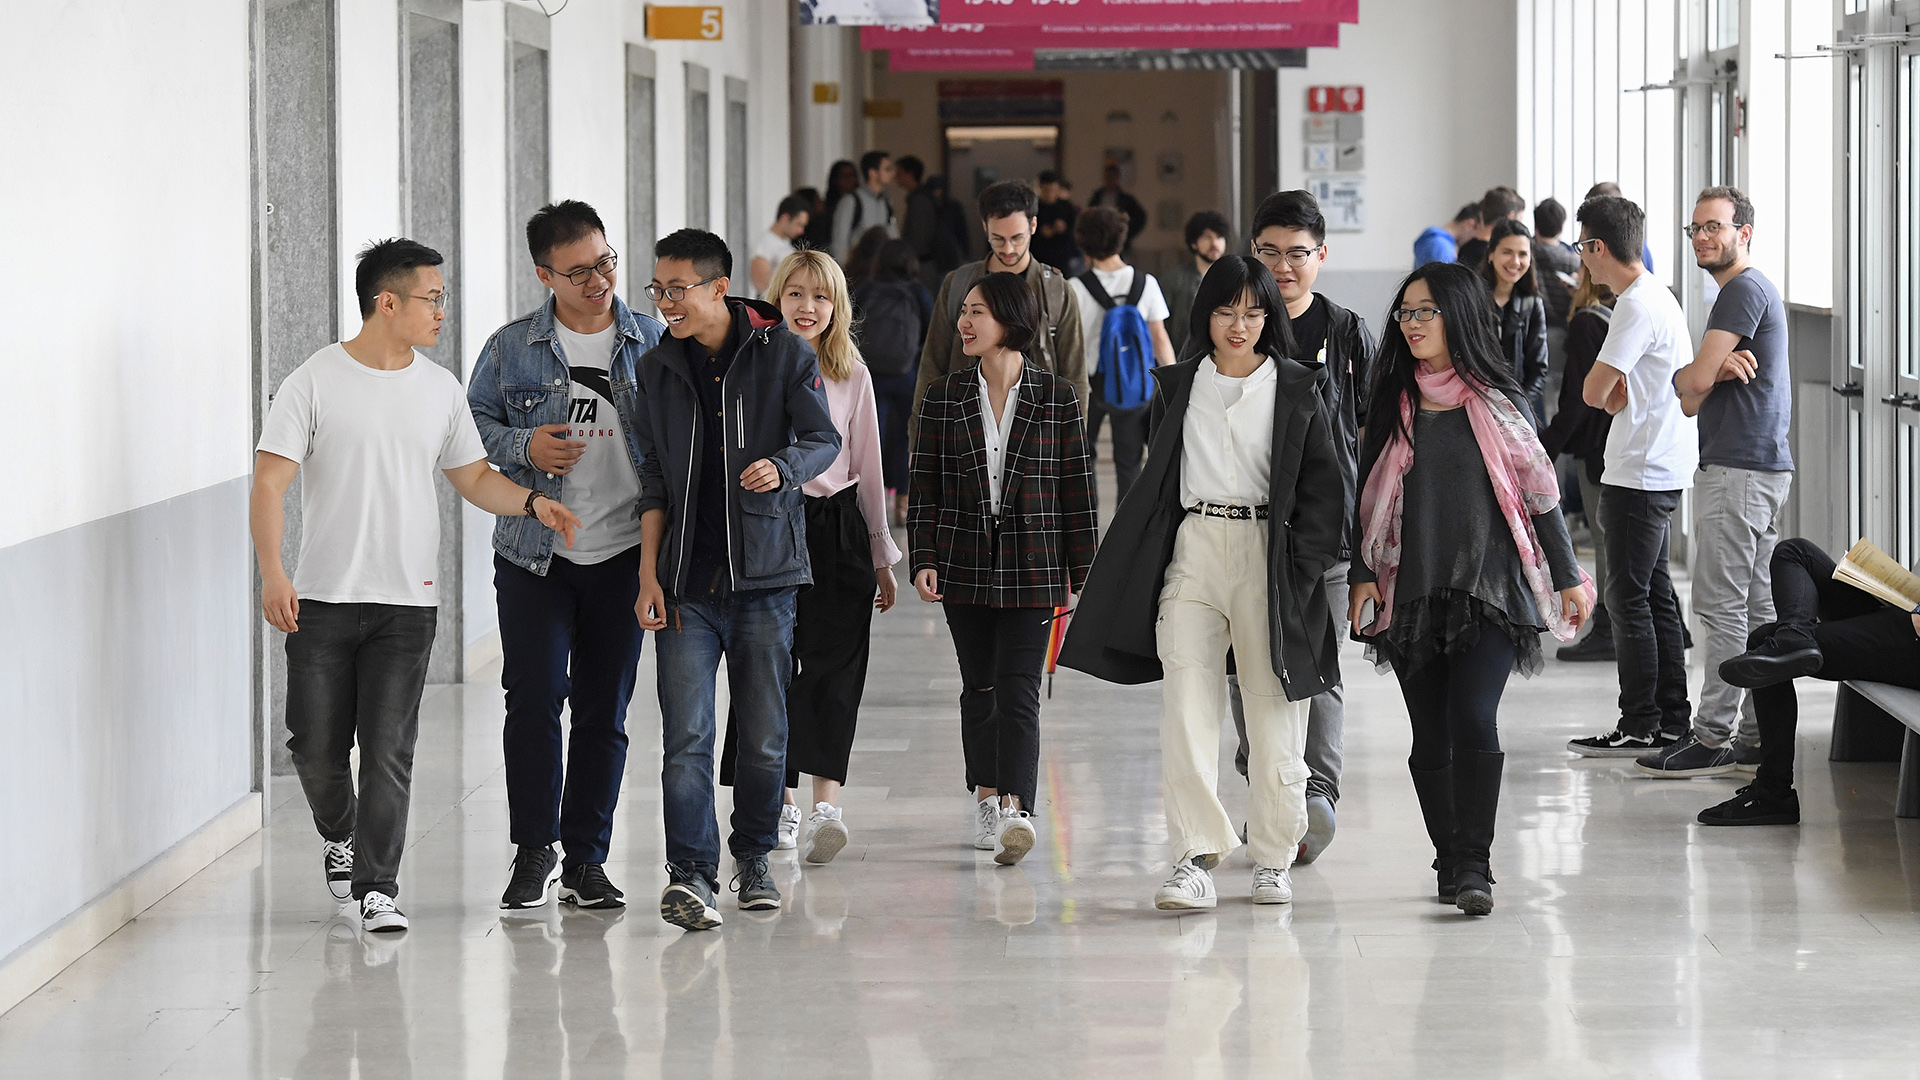 Studenti cinesi camminano nei corridoi del Politecnico di Torino